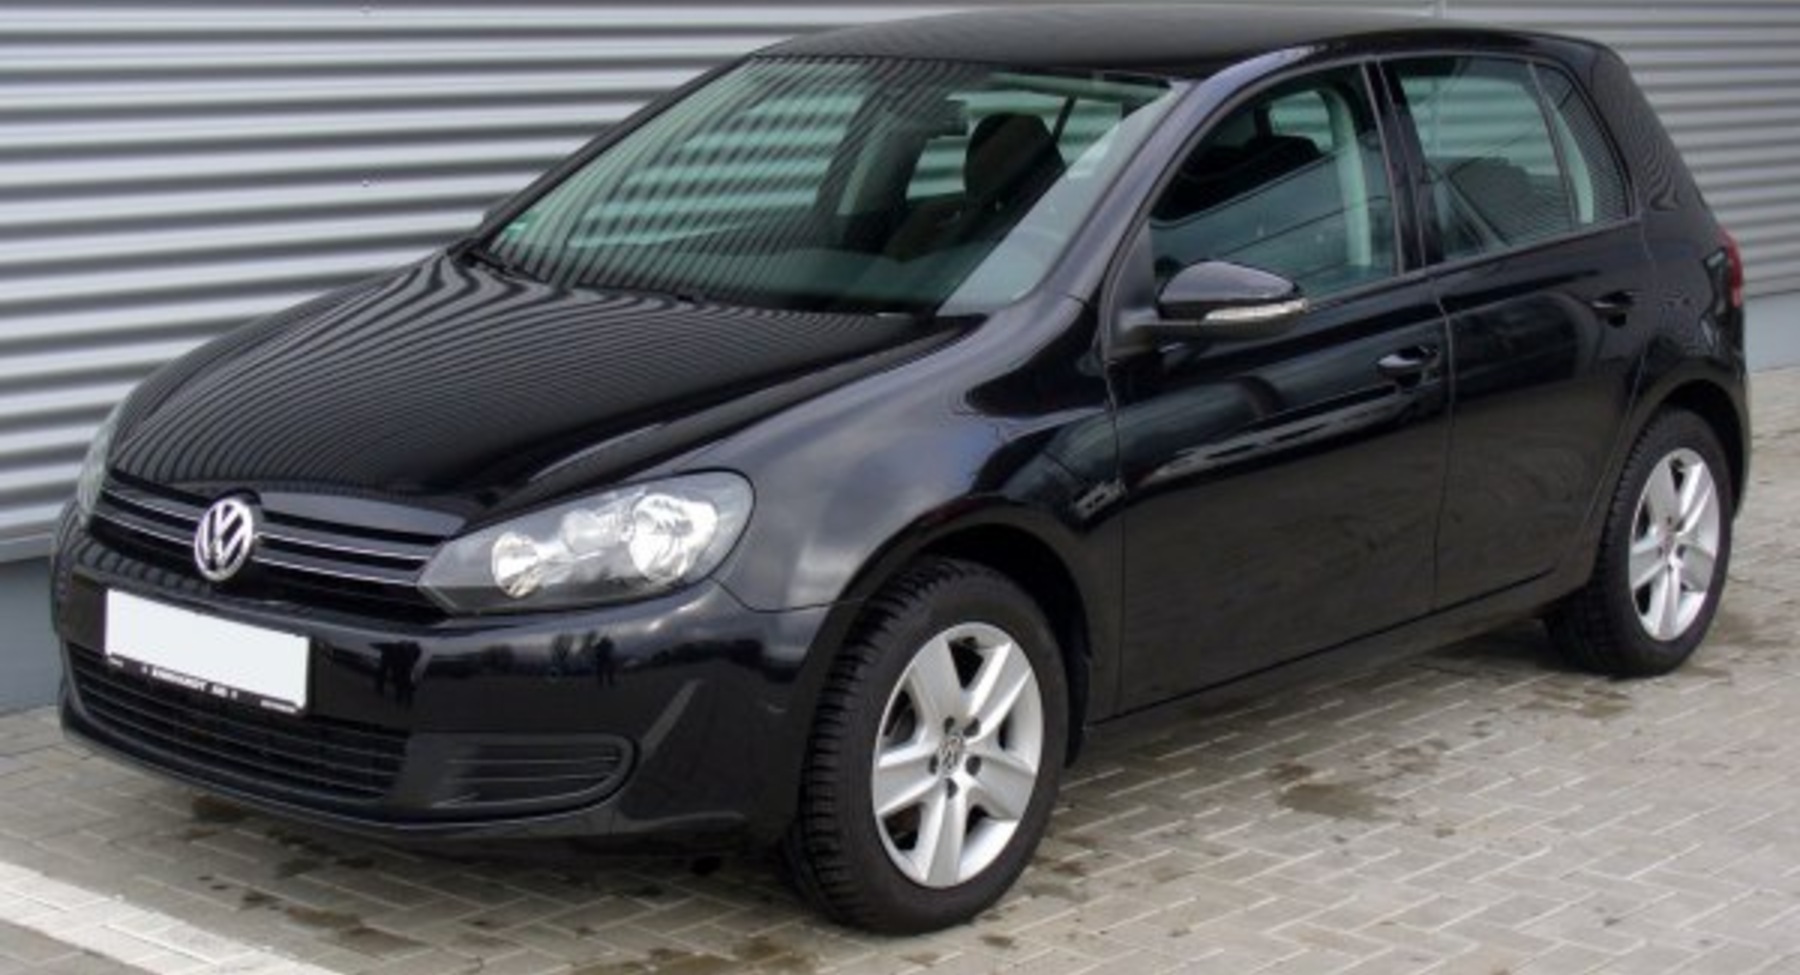 Volkswagen Golf VI (5-door) 1.6 TDI (105 Hp) 2009, 2010, 2011, 2012 